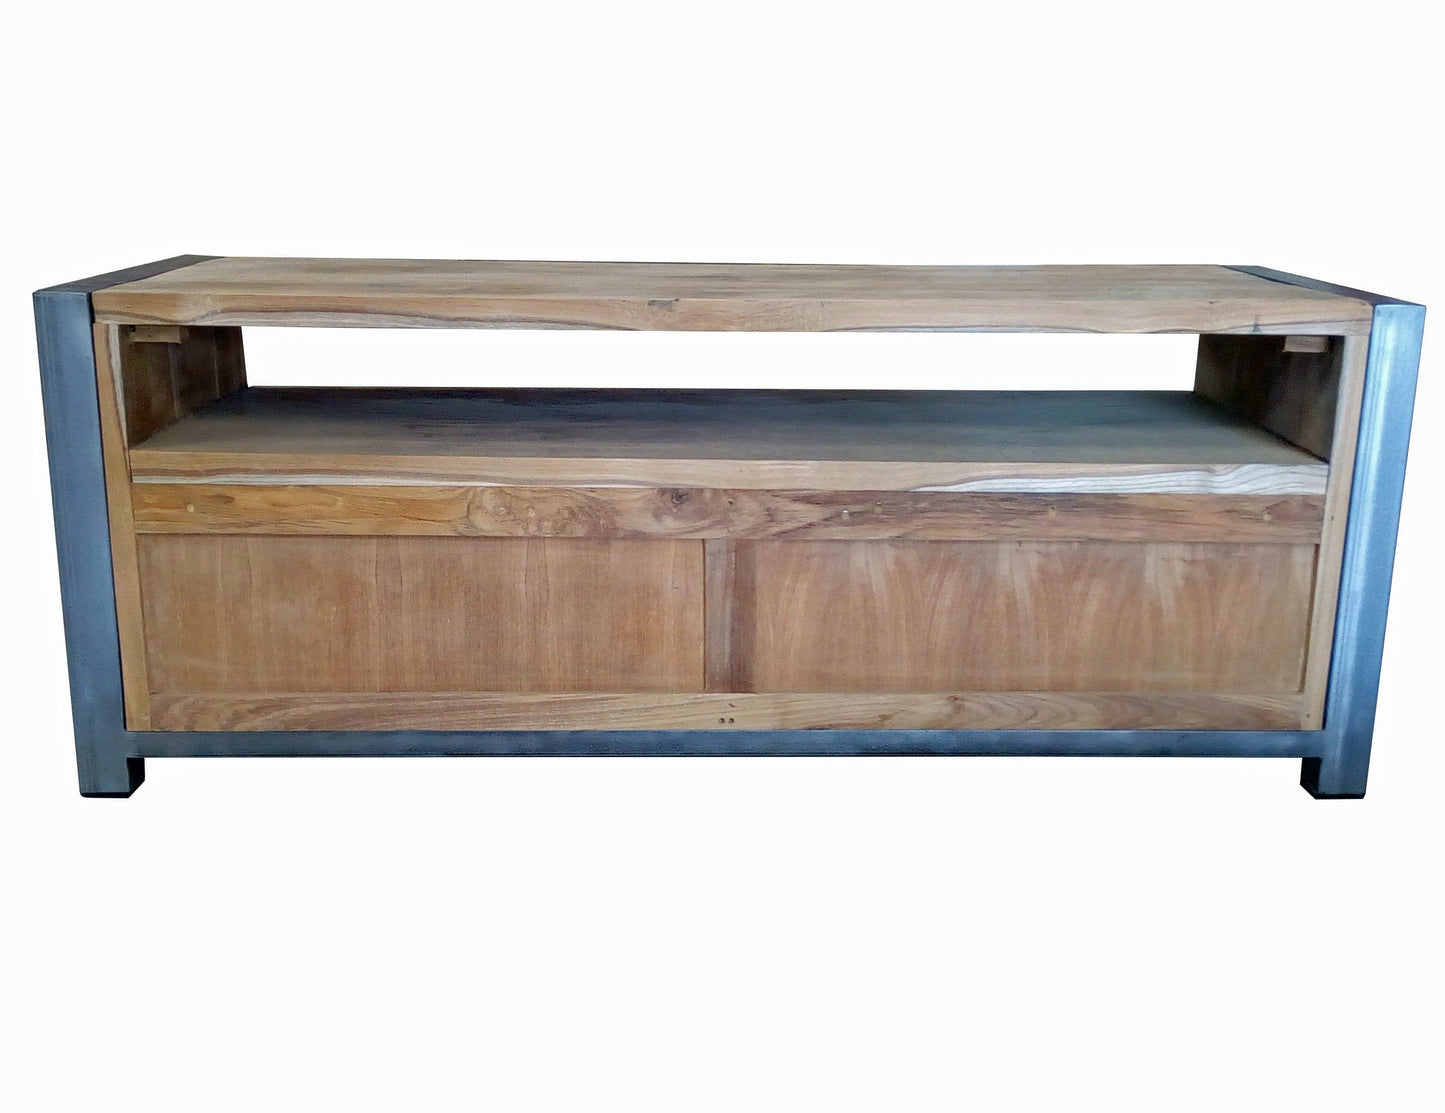 Lowboard table coffee table teak wood - Art. AUDIO-2D-50